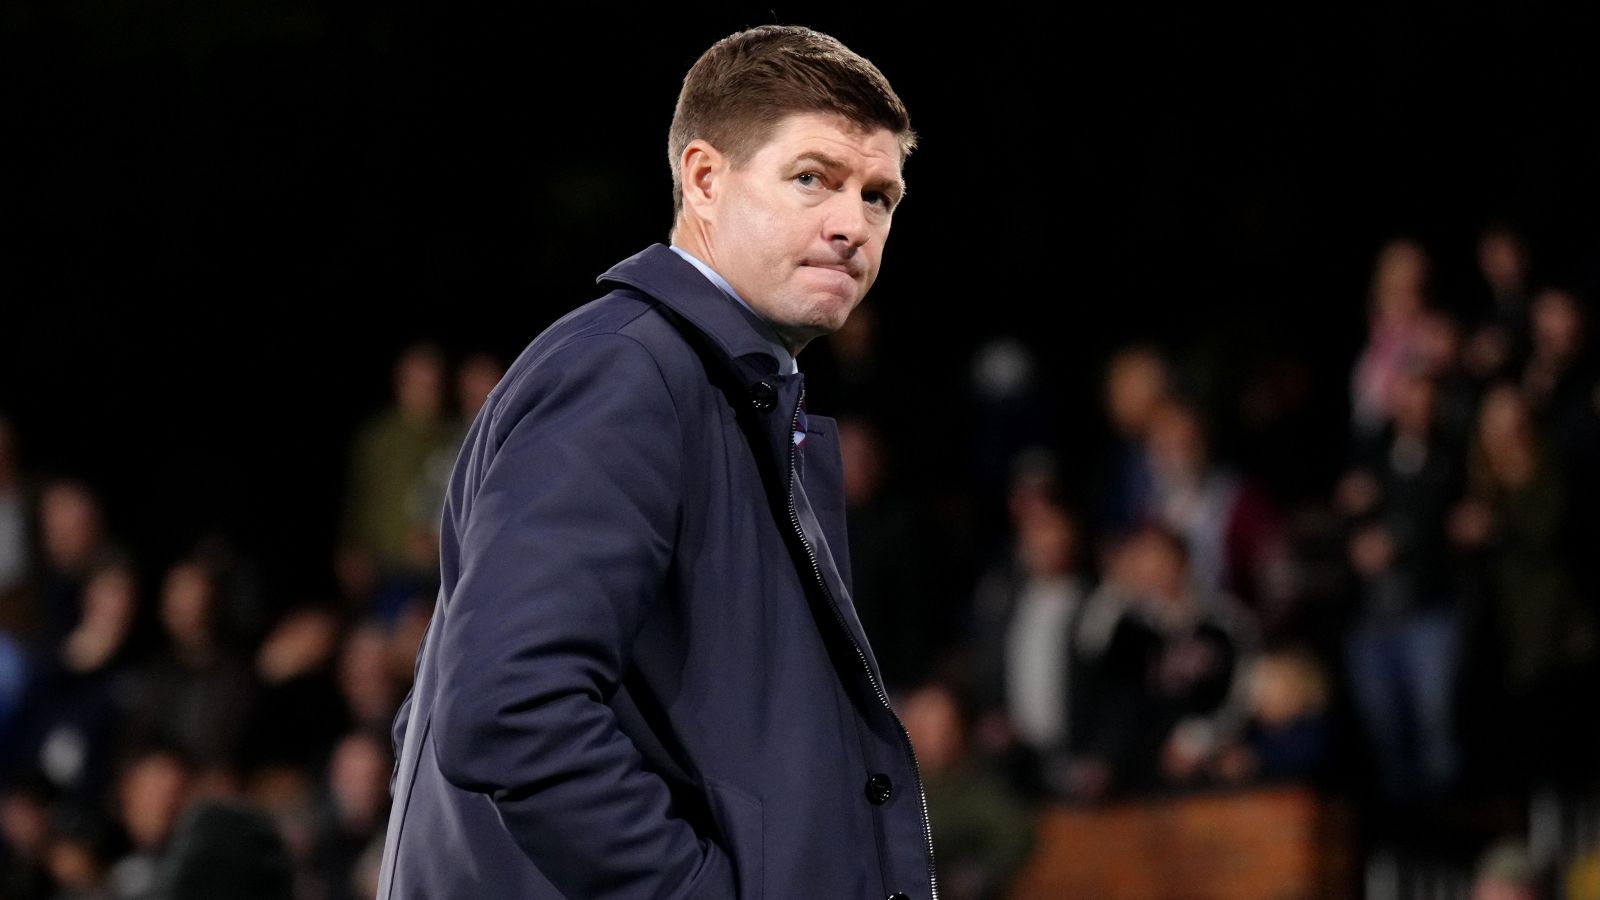 Aston Villa boss Steven Gerrard looks dejected